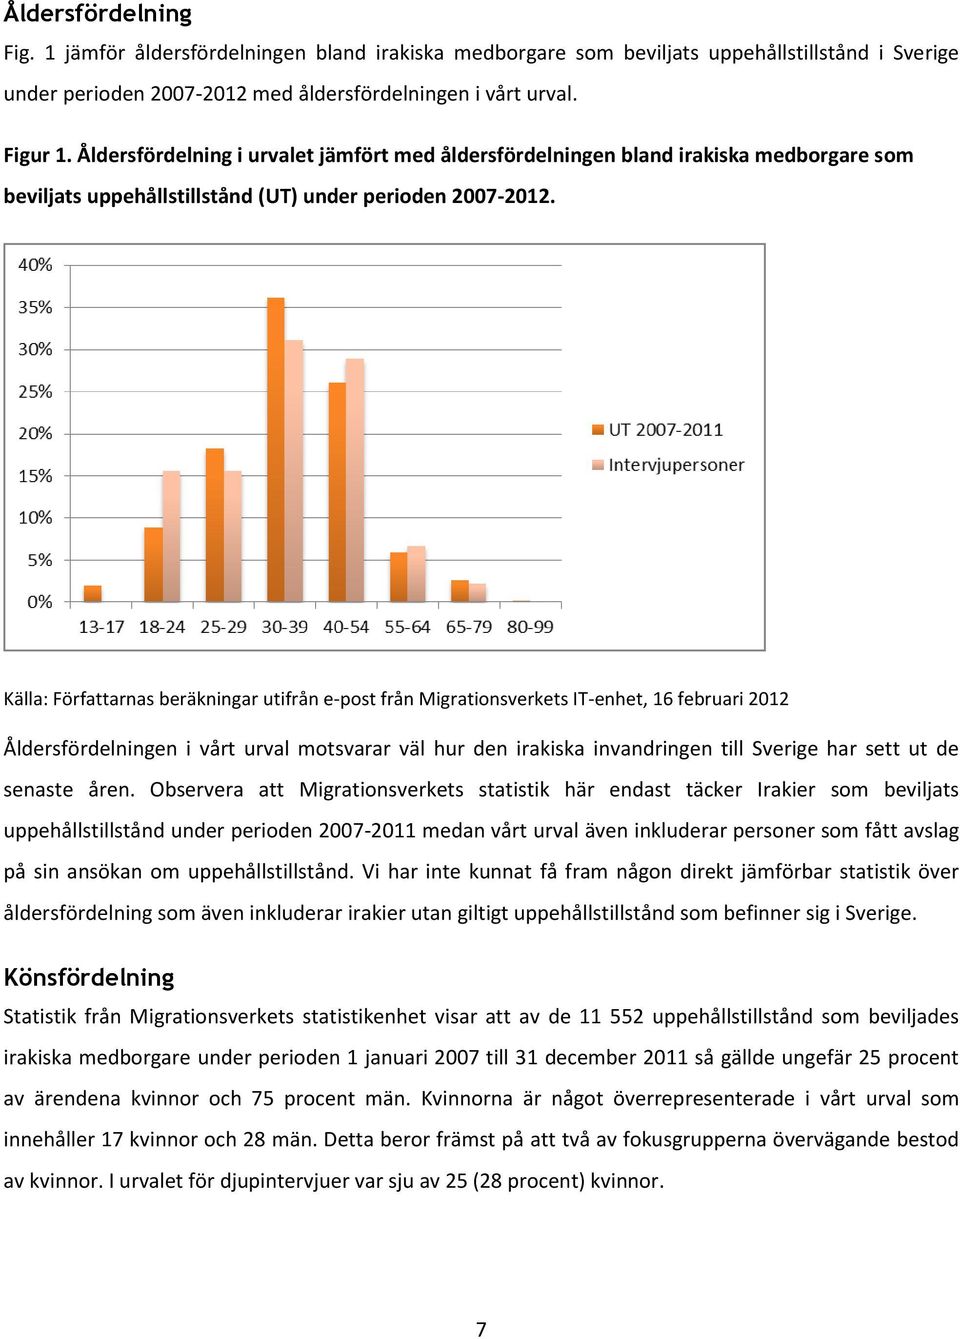 Källa: Författarnas beräkningar utifrån e-post från Migrationsverkets IT-enhet, 16 februari 2012 Åldersfördelningen i vårt urval motsvarar väl hur den irakiska invandringen till Sverige har sett ut